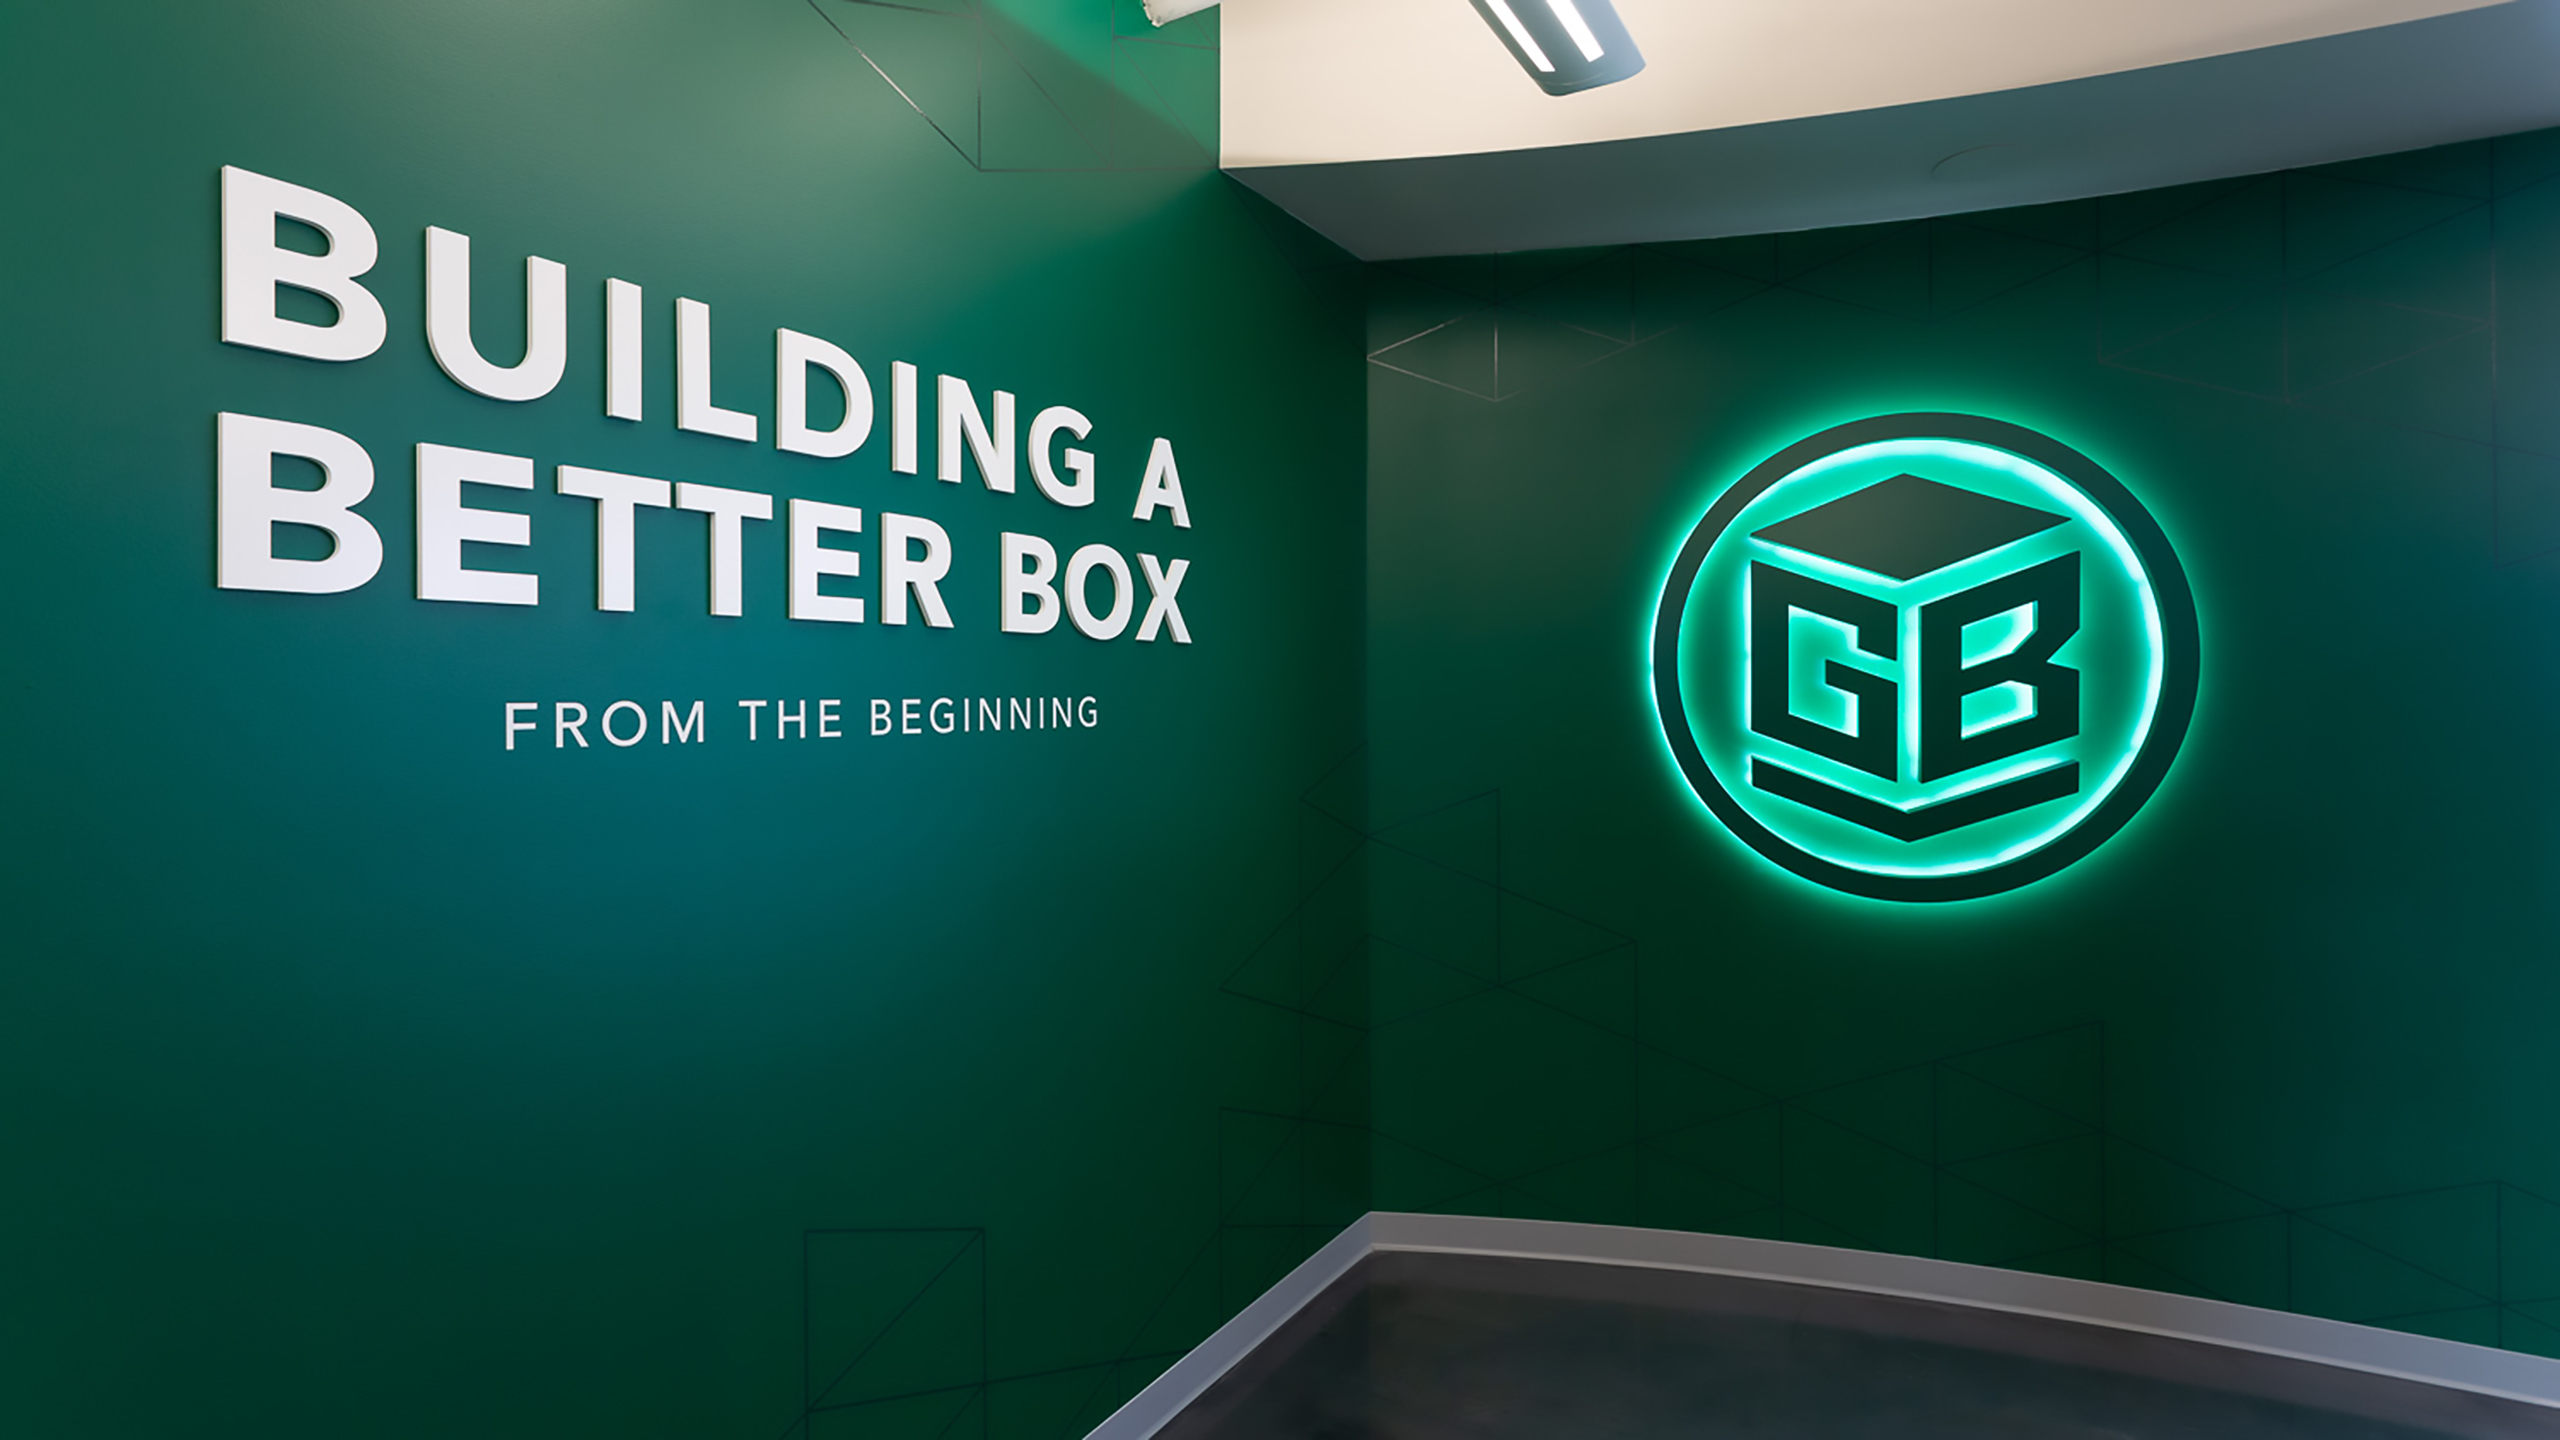 Green Bay Packaging Entry LED Logo Backlit